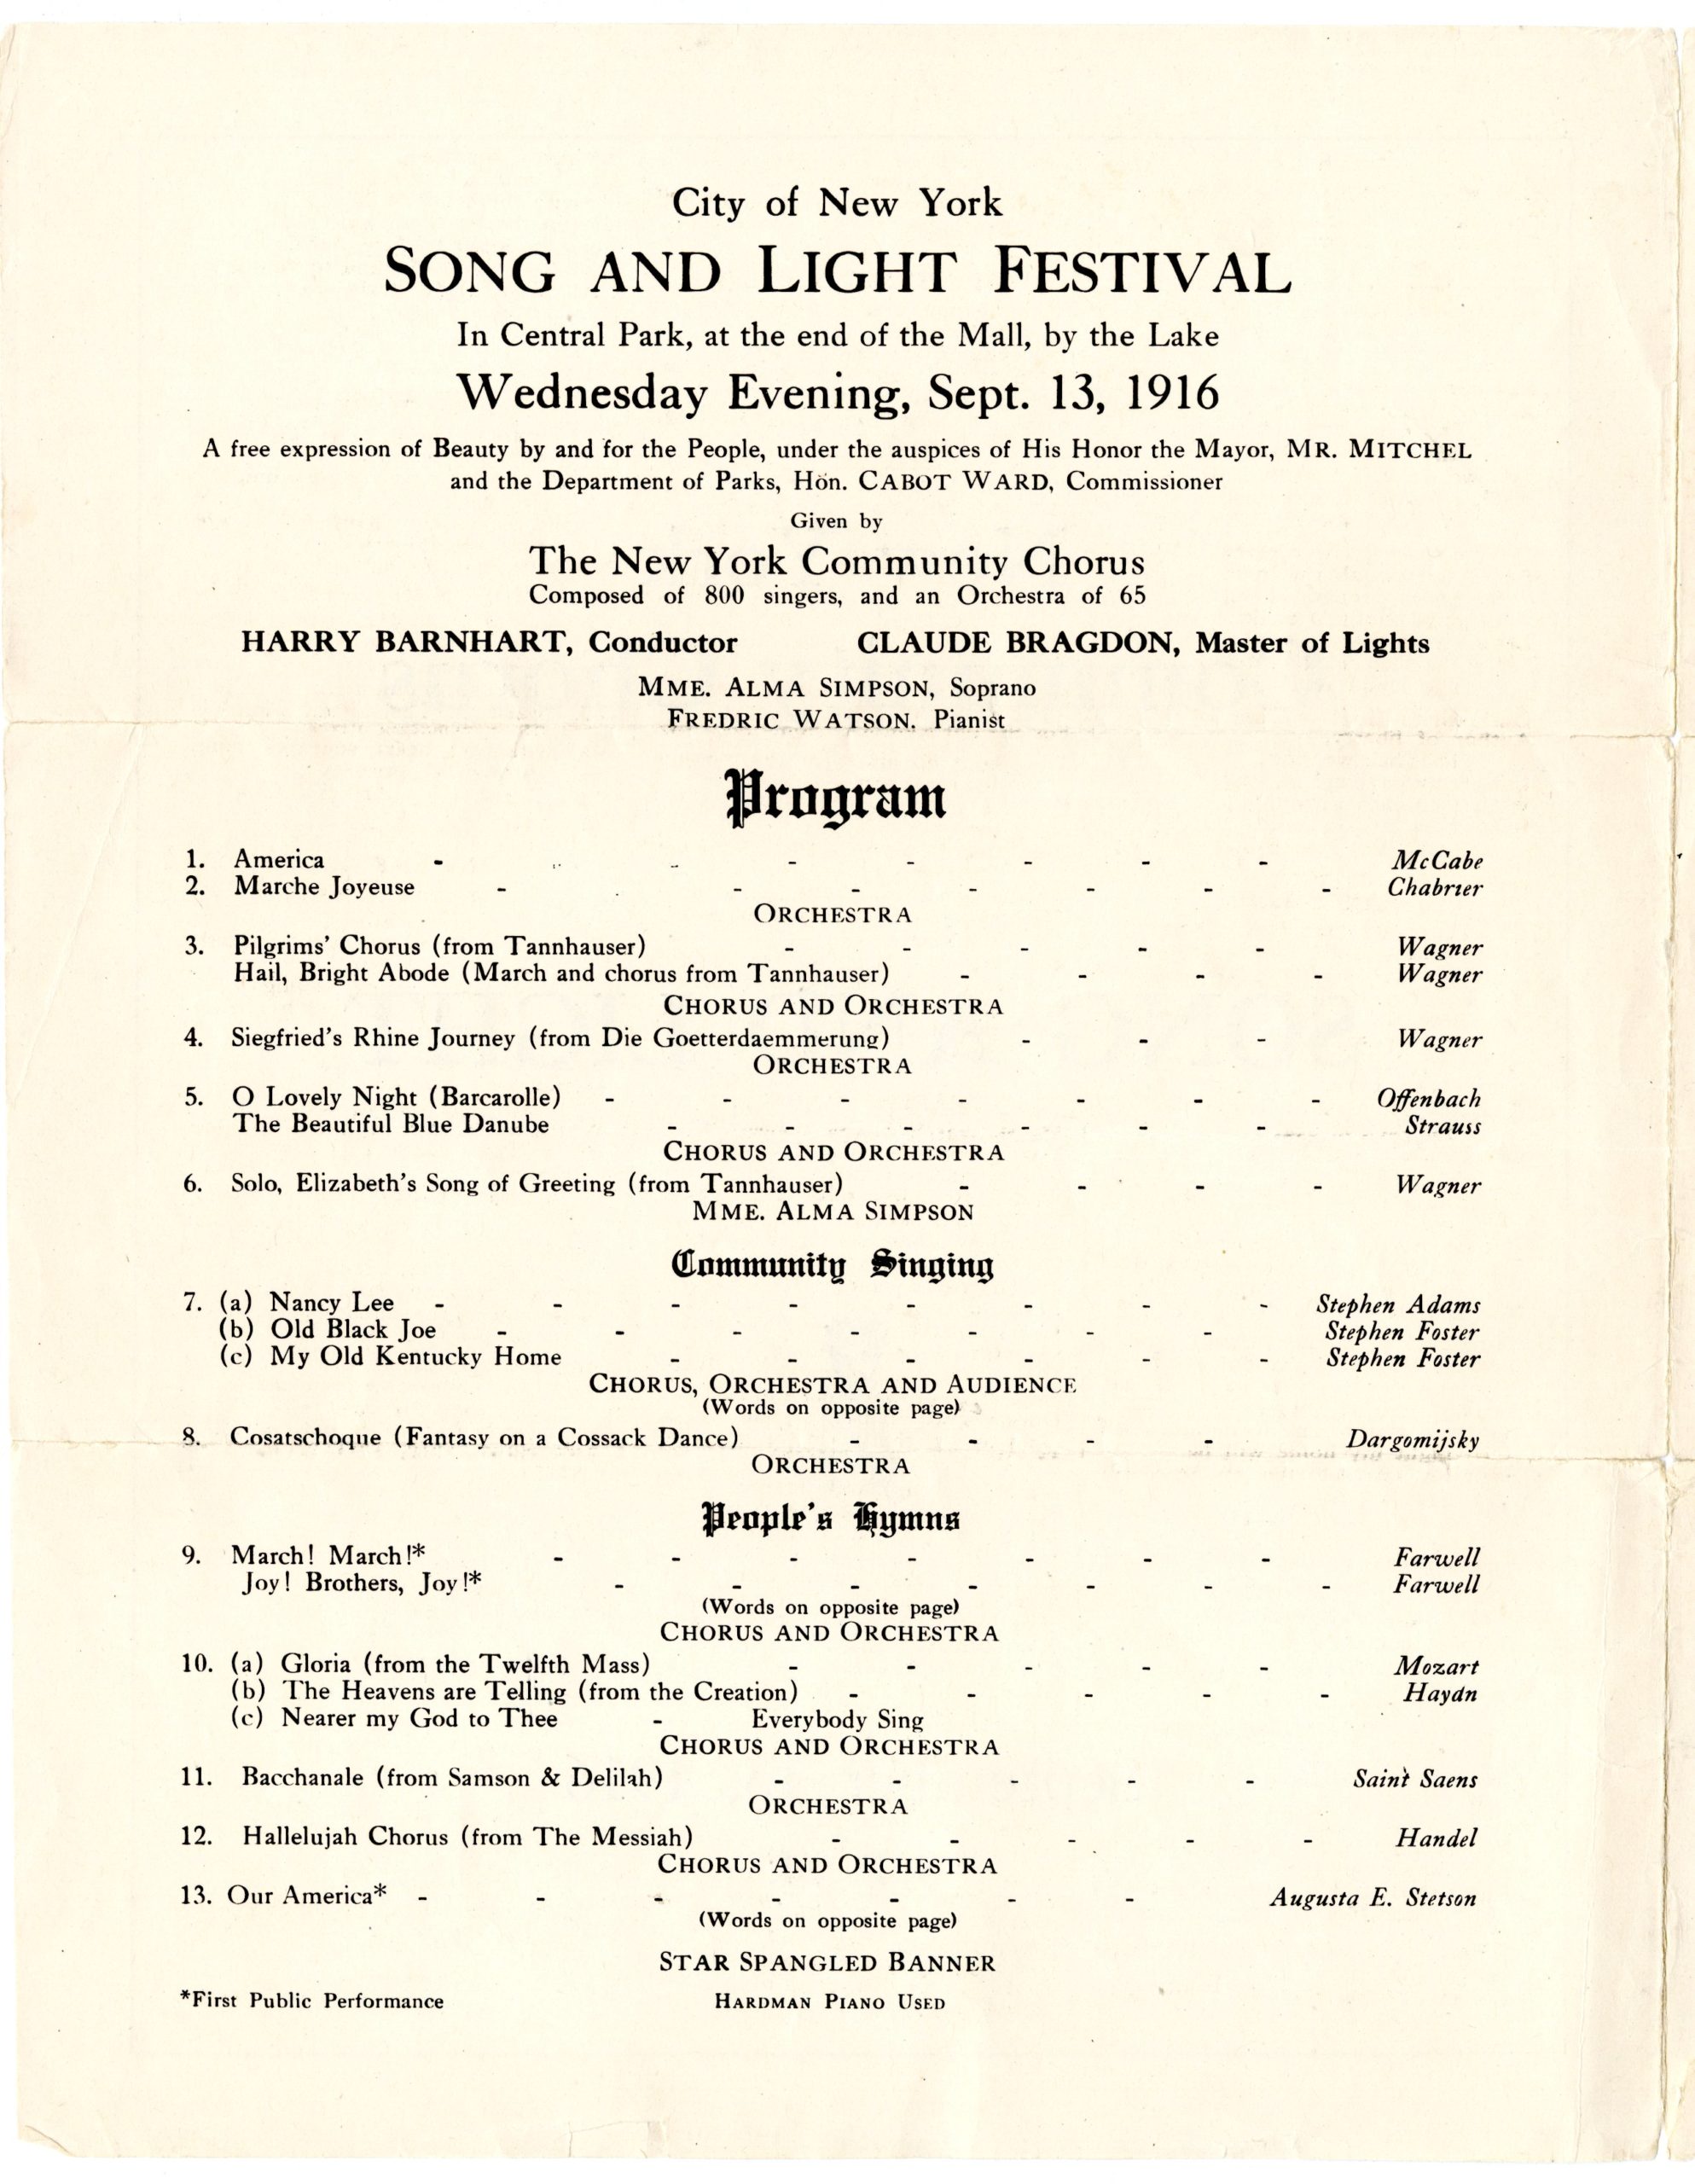 NYC Song and Light Festival program, program order.